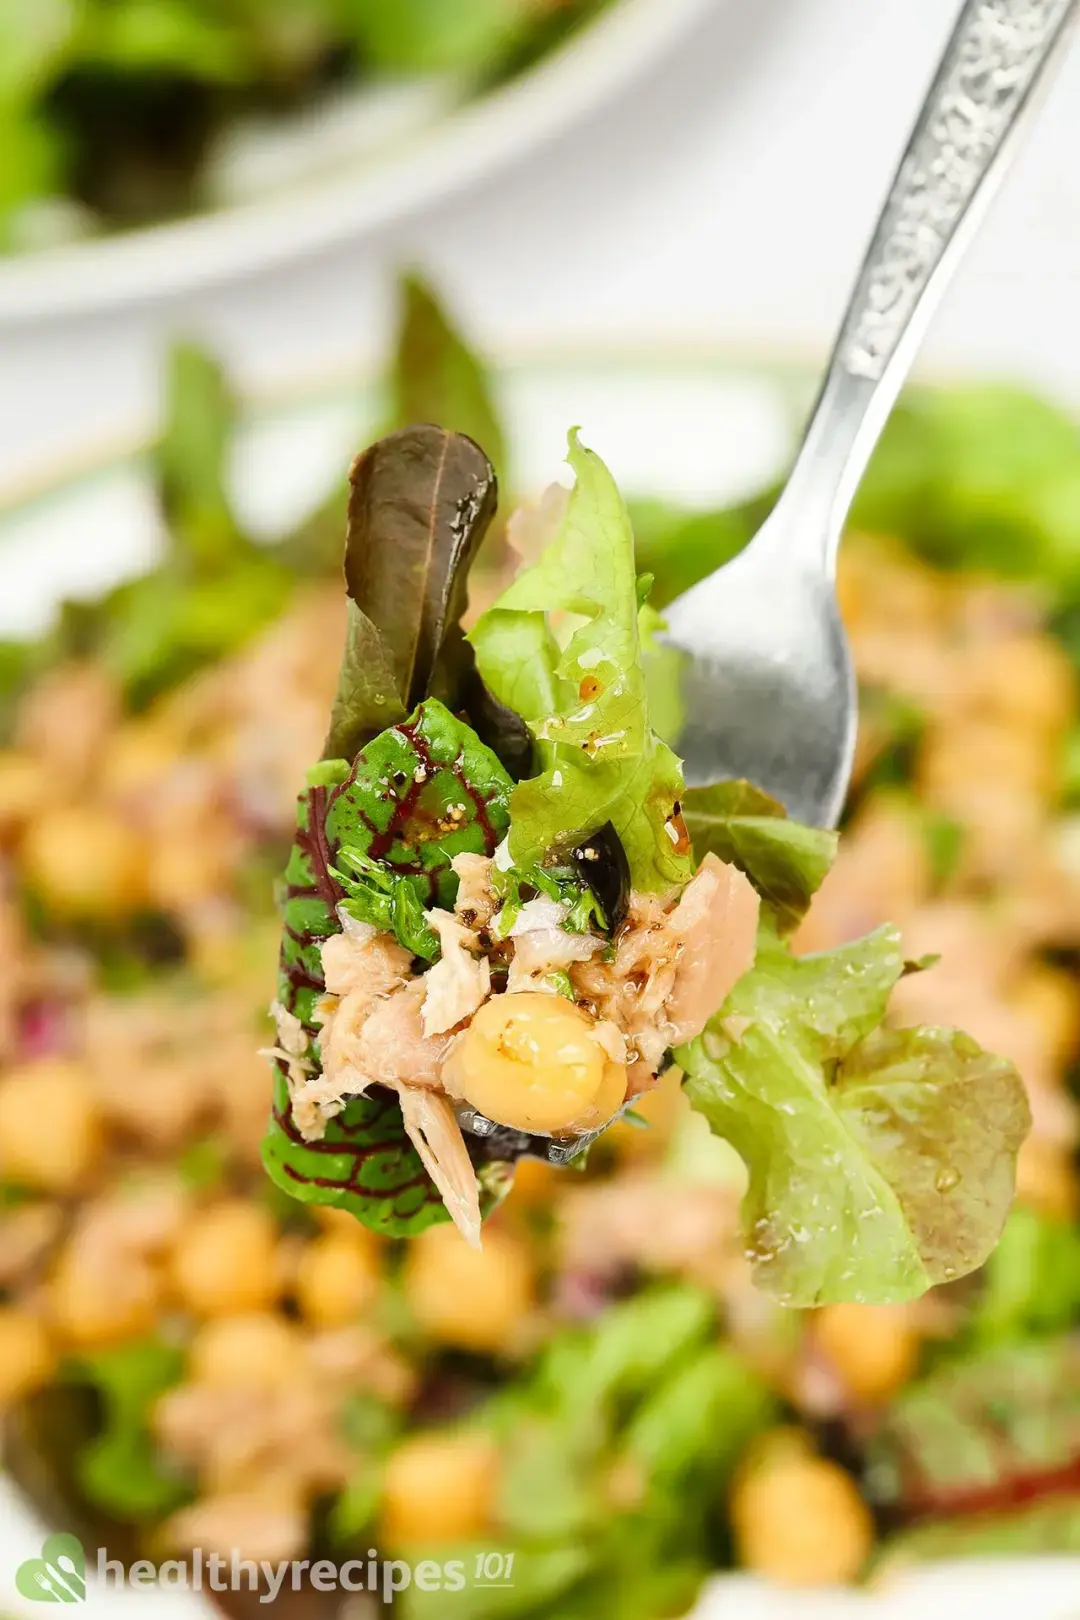 Is Chickpea Tuna Salad Healthy